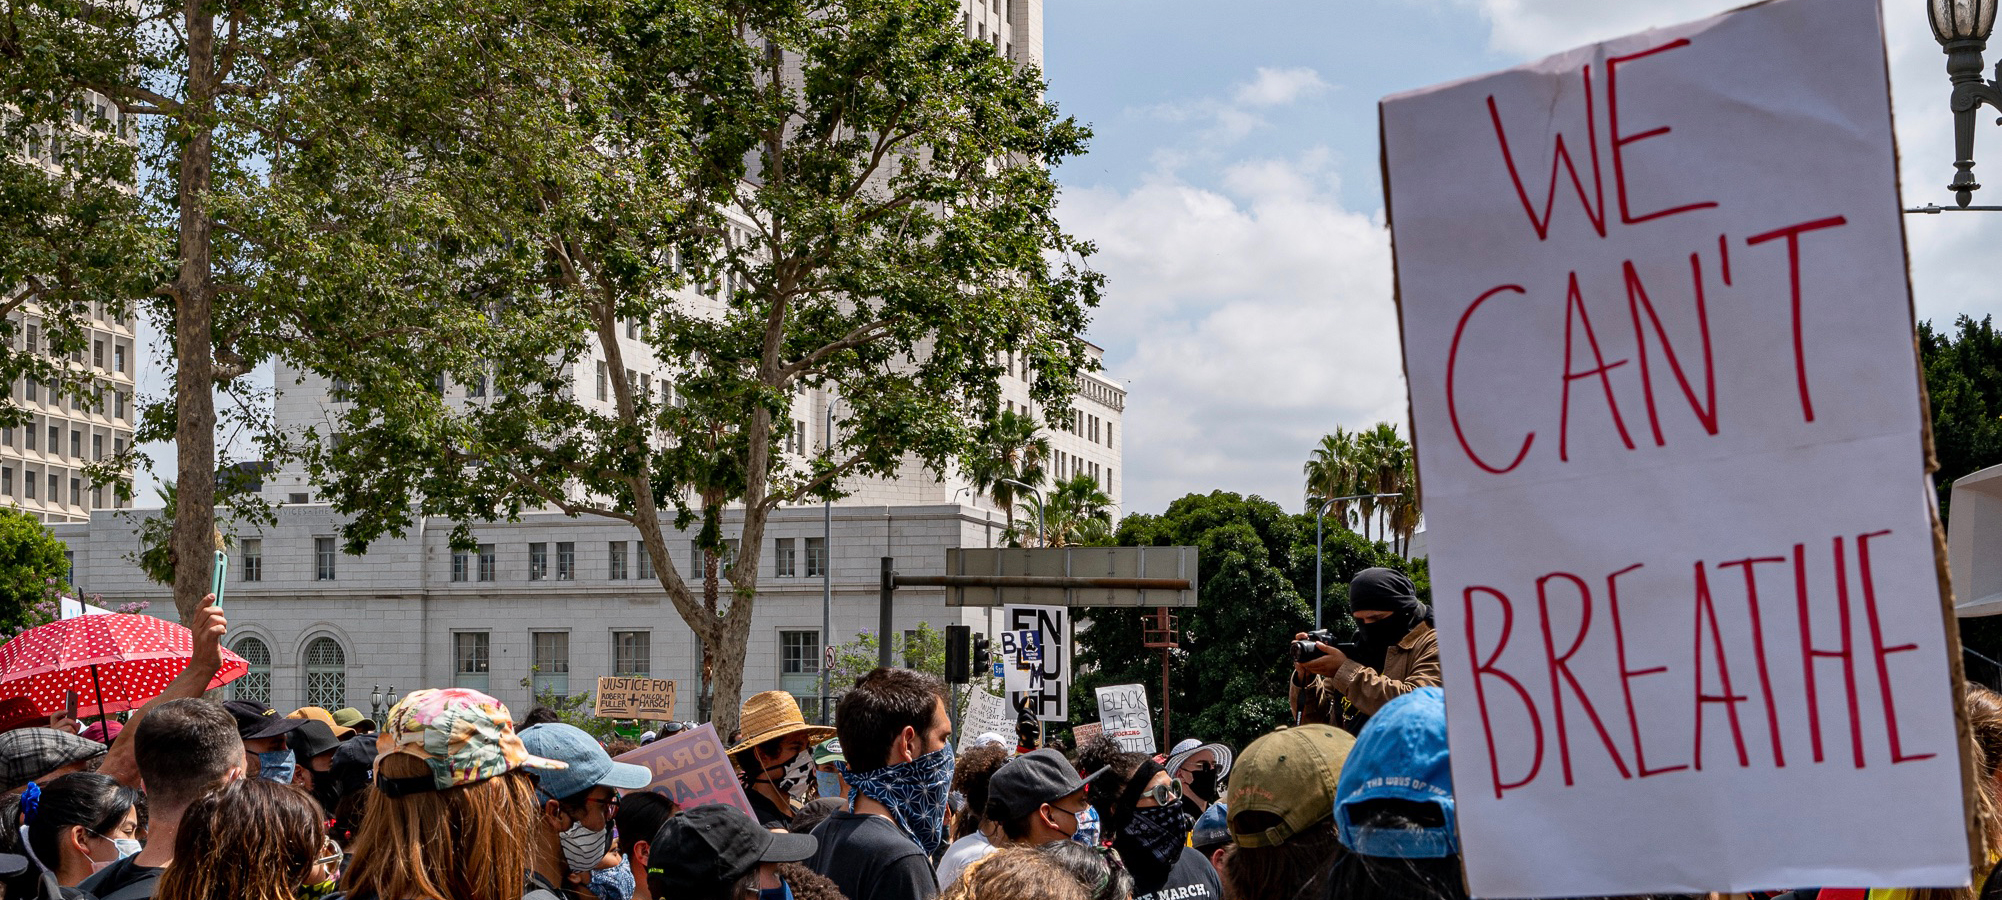 Protestors Outside LA City Hall